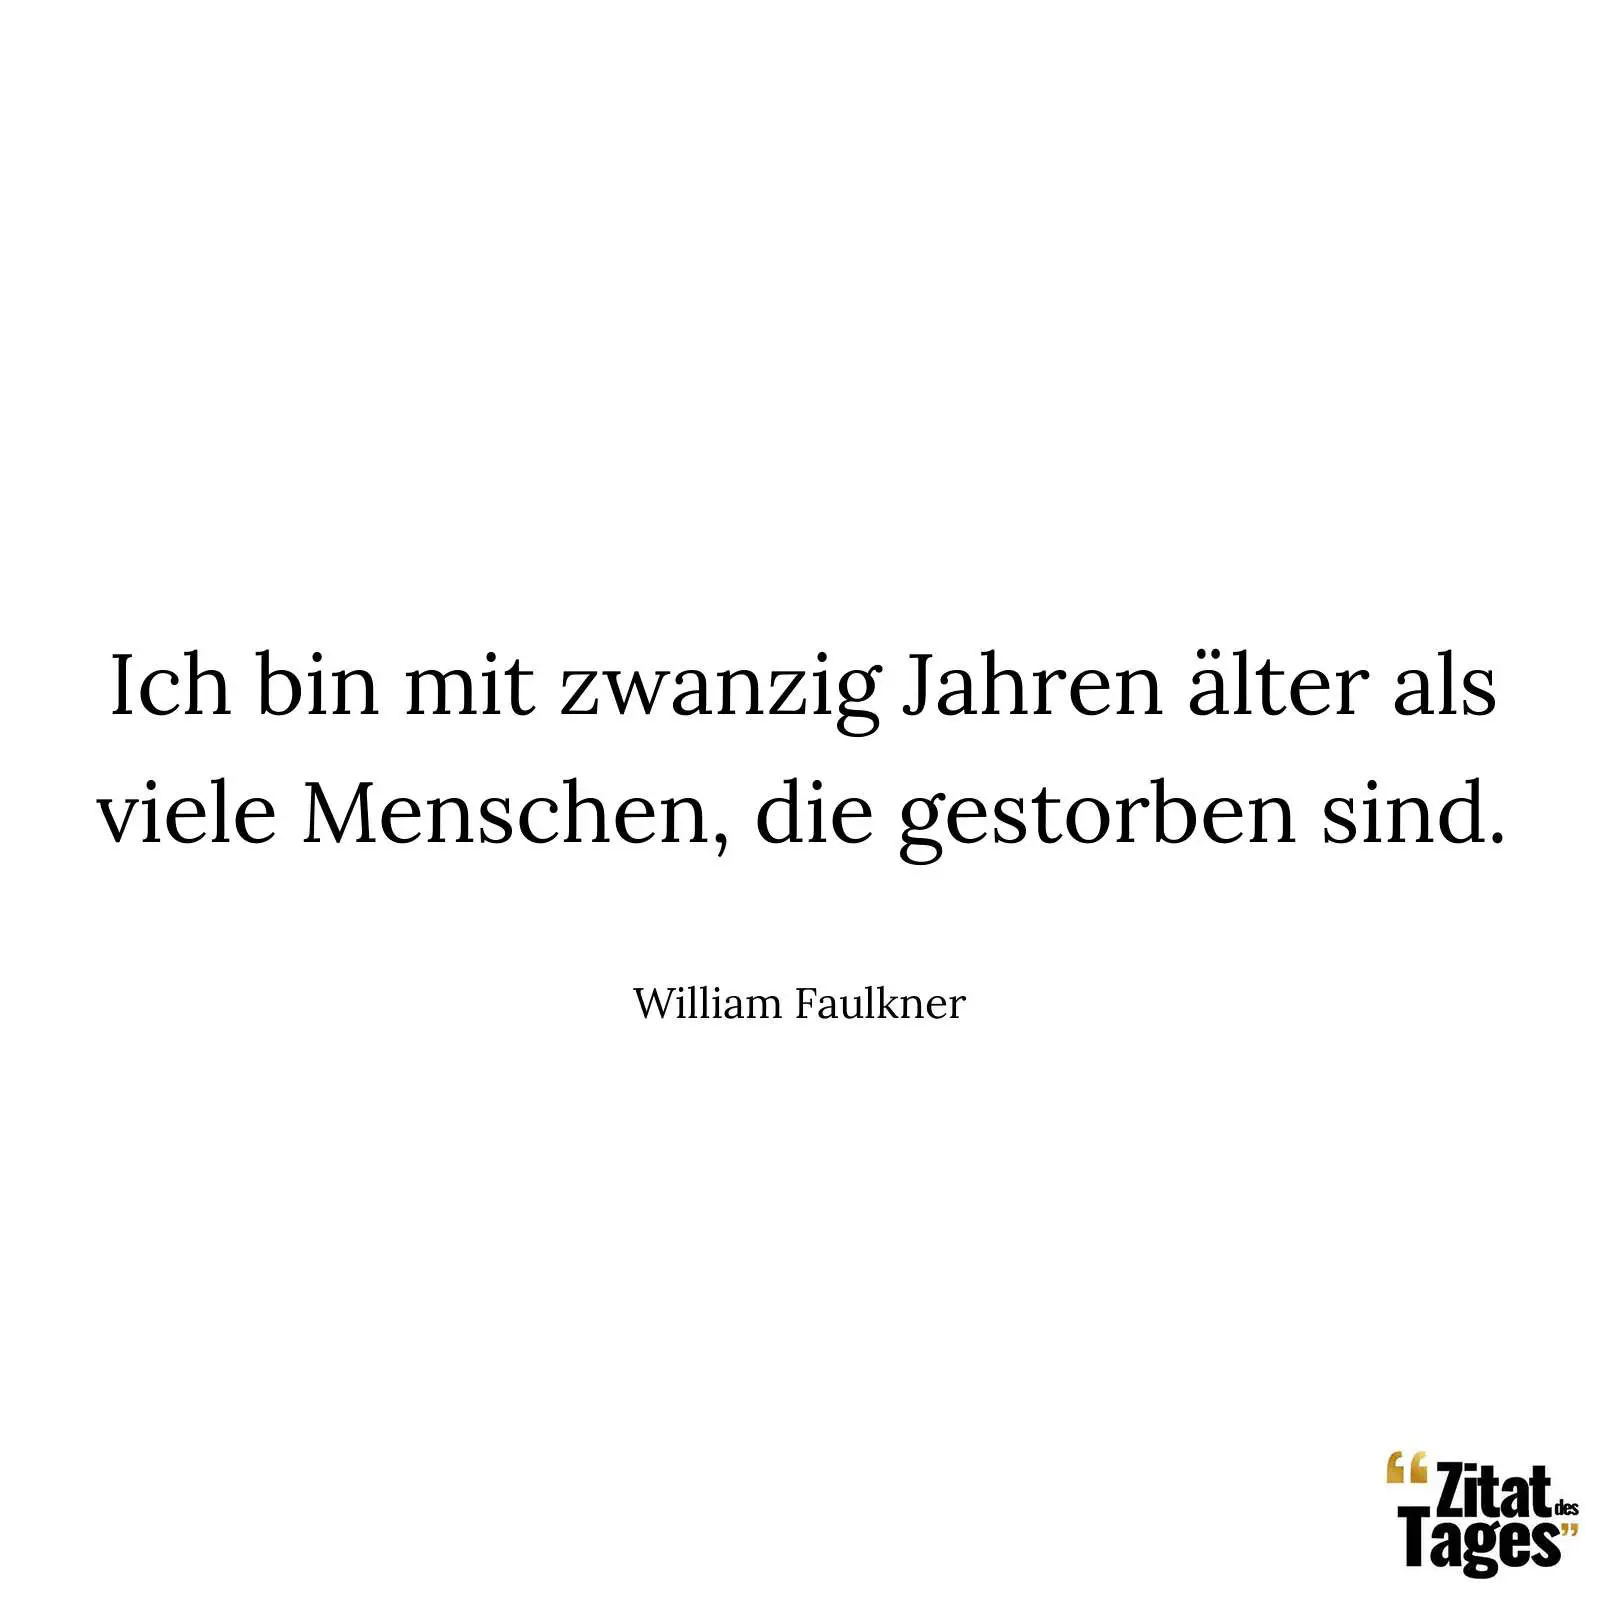 Ich bin mit zwanzig Jahren älter als viele Menschen, die gestorben sind. - William Faulkner